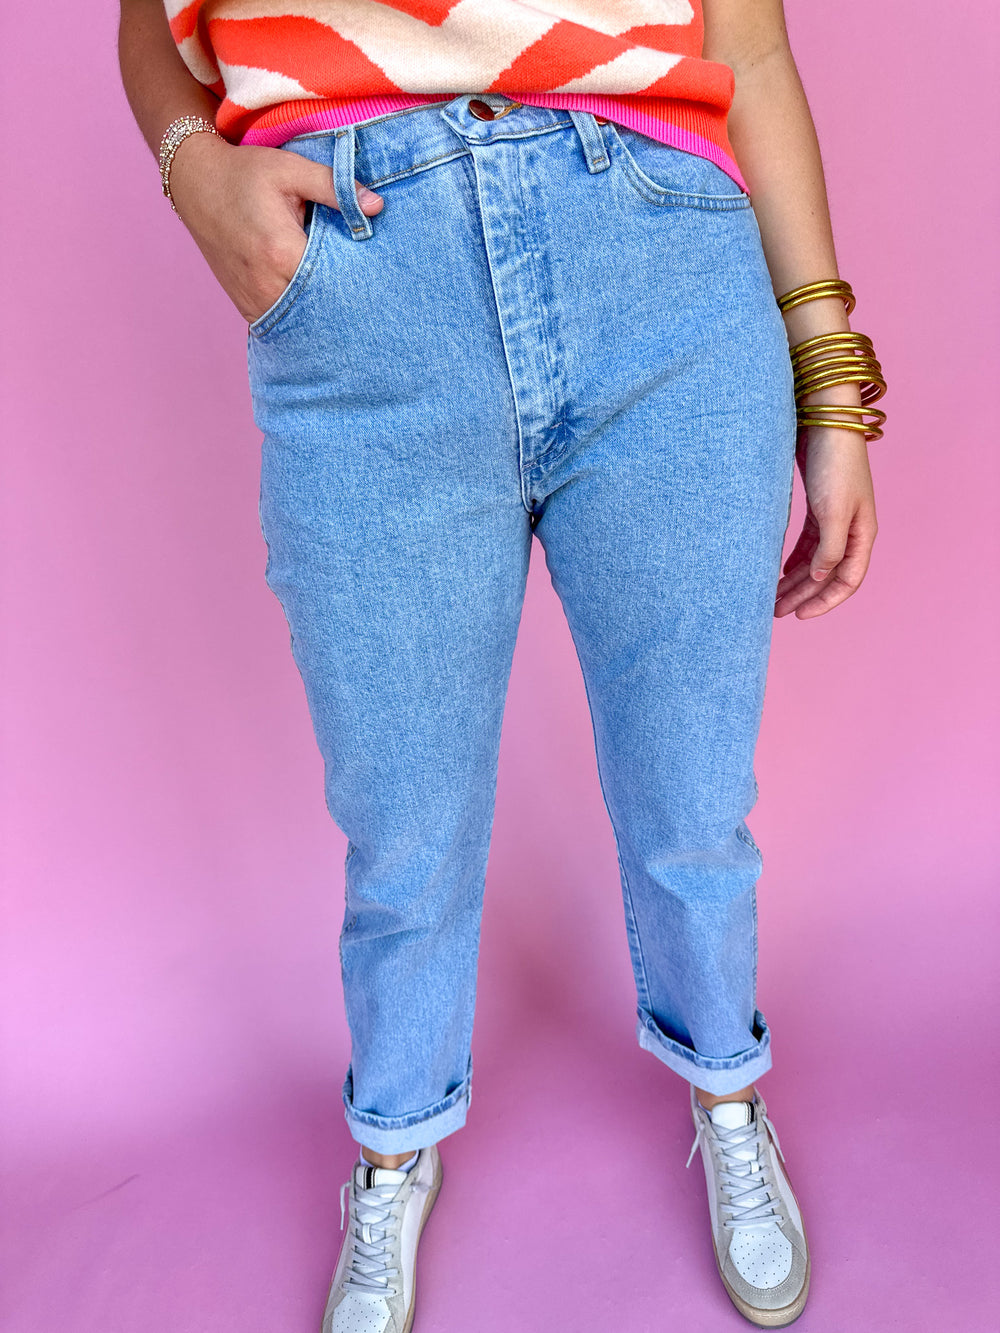 Wrangler | Women's Cowboy Cut Jeans - Antique Wash